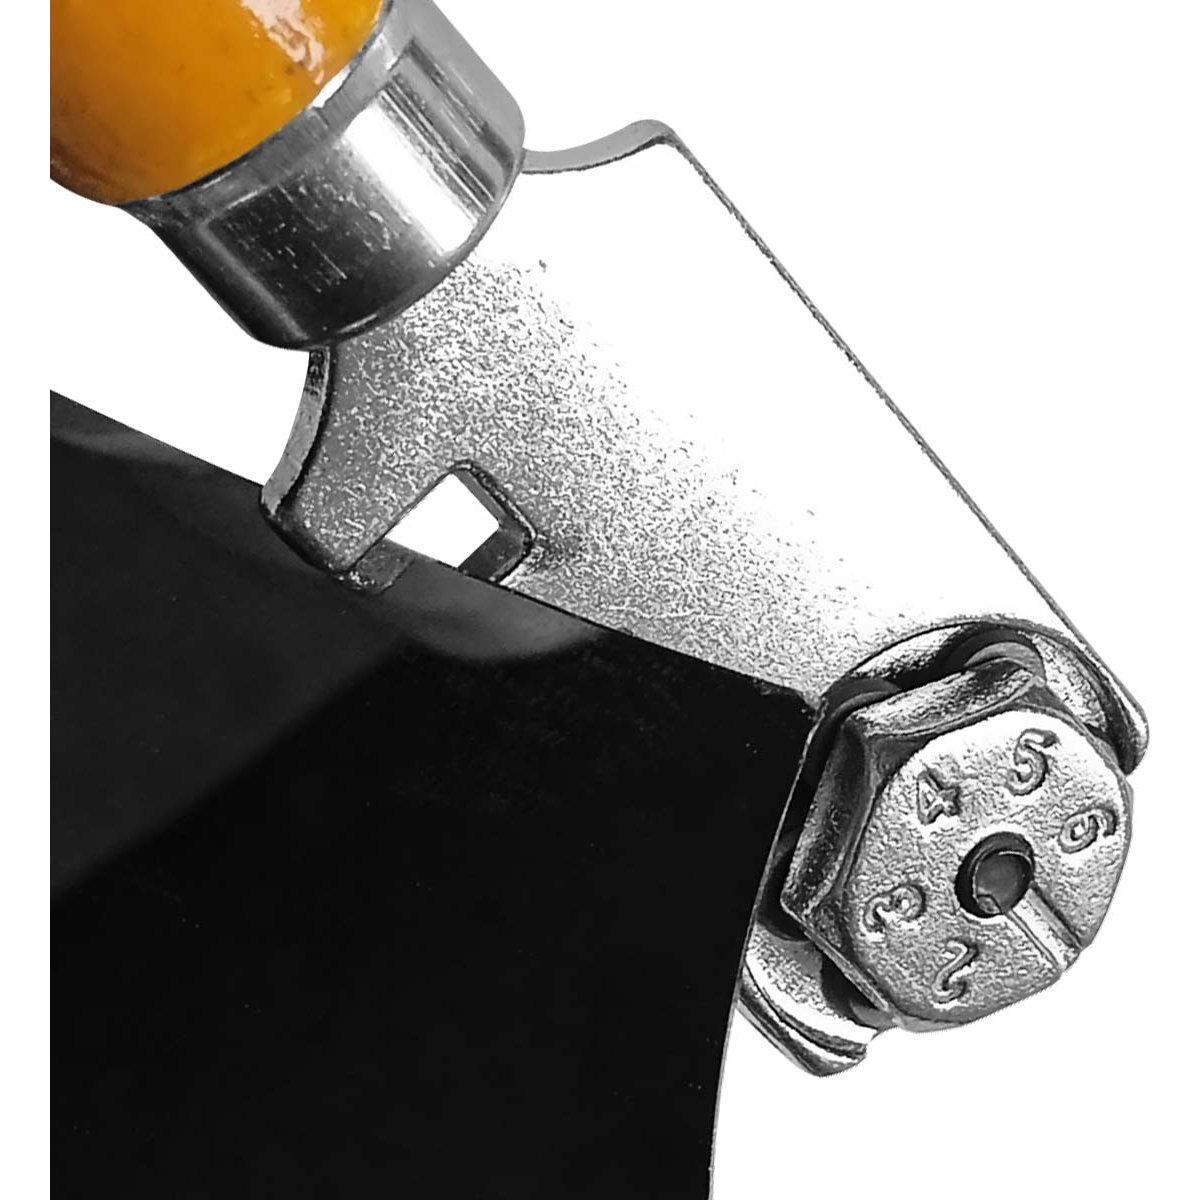 Herramienta profesional de cortador de vidrio con mango de aleación de-NEW